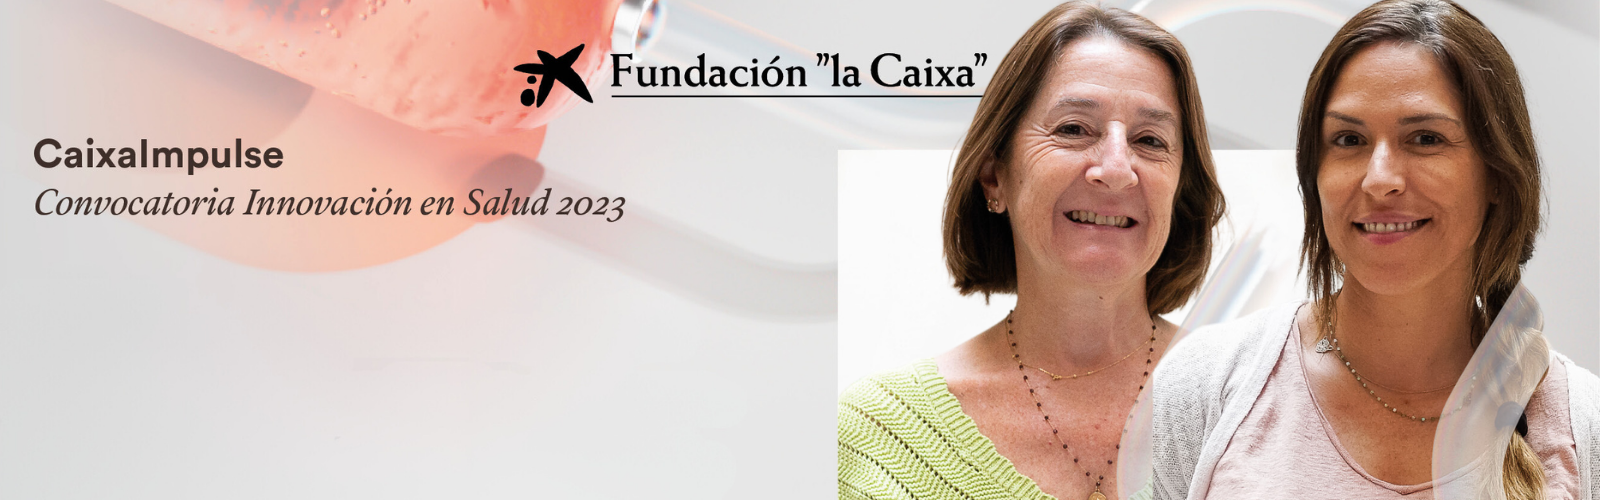 La Fundación ”la Caixa” impulsa dos proyectos biomédicos de la Universidad de Murcia para trasladar sus investigaciones punteras del laboratorio a lo